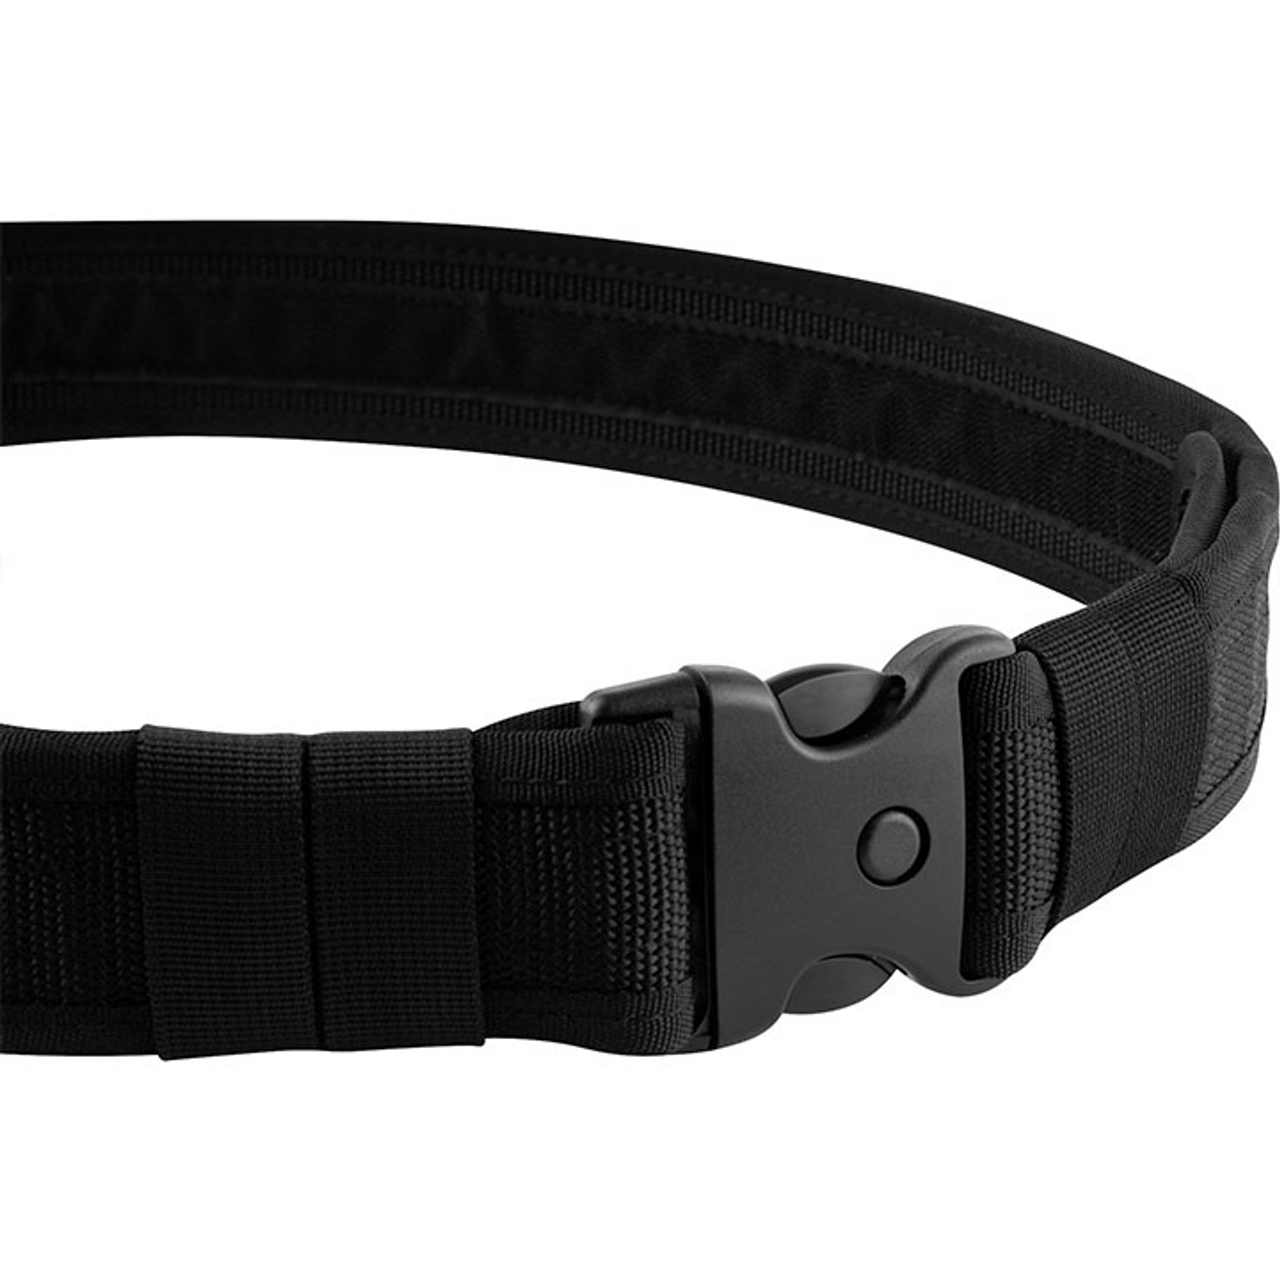 Viper Security Belt - Black